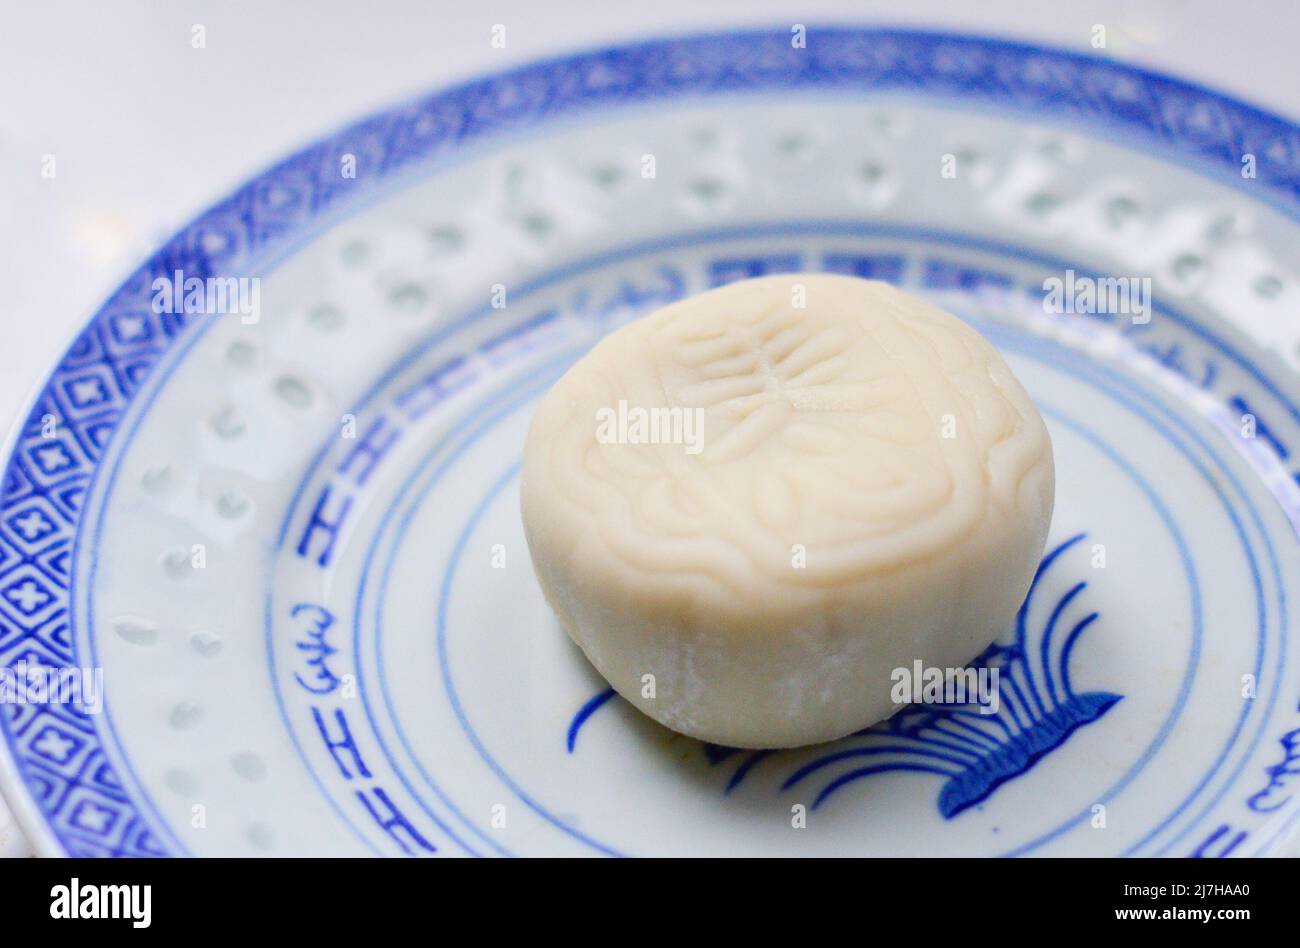 Chine, août 2018. Un gâteau blanc chinois de lune neigeux fait par 'Meixin' (marque) isolé sur une assiette. Banque D'Images